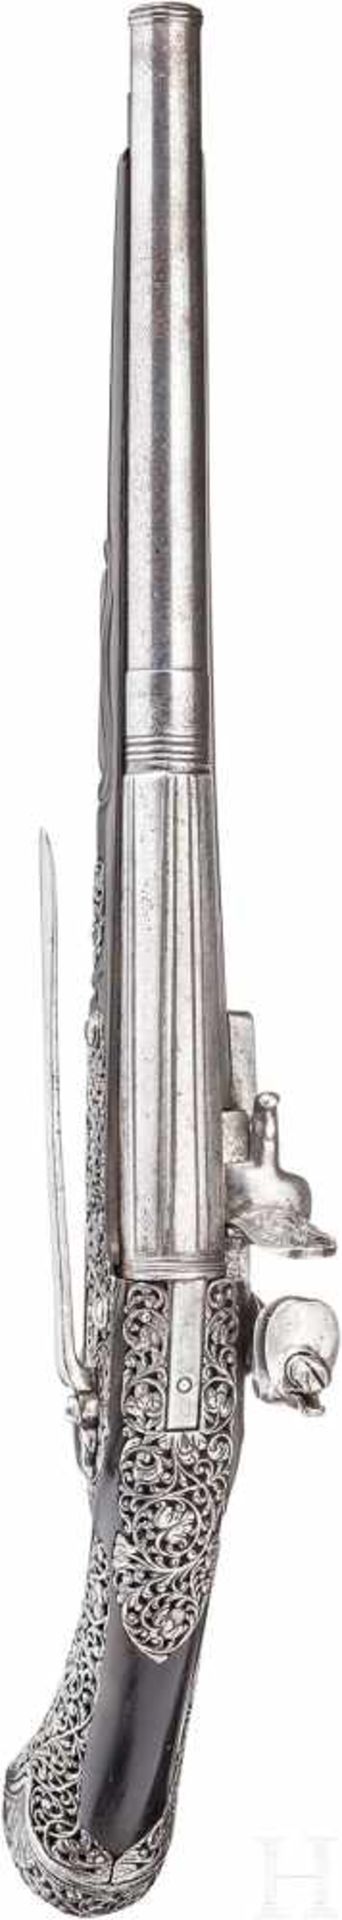 Eisengeschnittene Steinschlosspistole, Brescia, Ende 17. Jhdt.Über der Kammer längsgekehlter, nach - Bild 4 aus 6